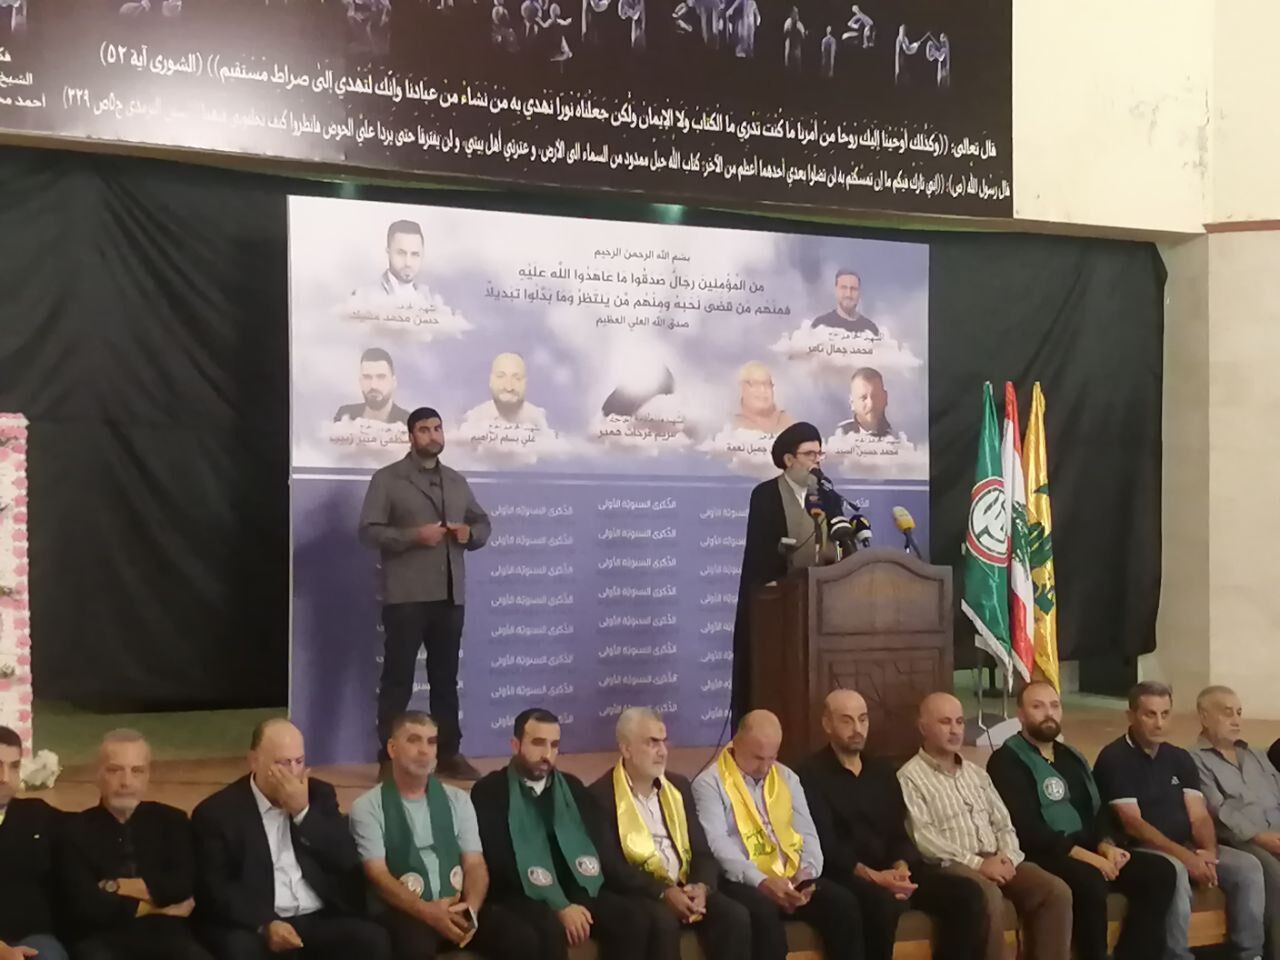 حزب الله: خون شهدای الطیونه هدر نخواهد رفت و به حق خود خواهیم رسید